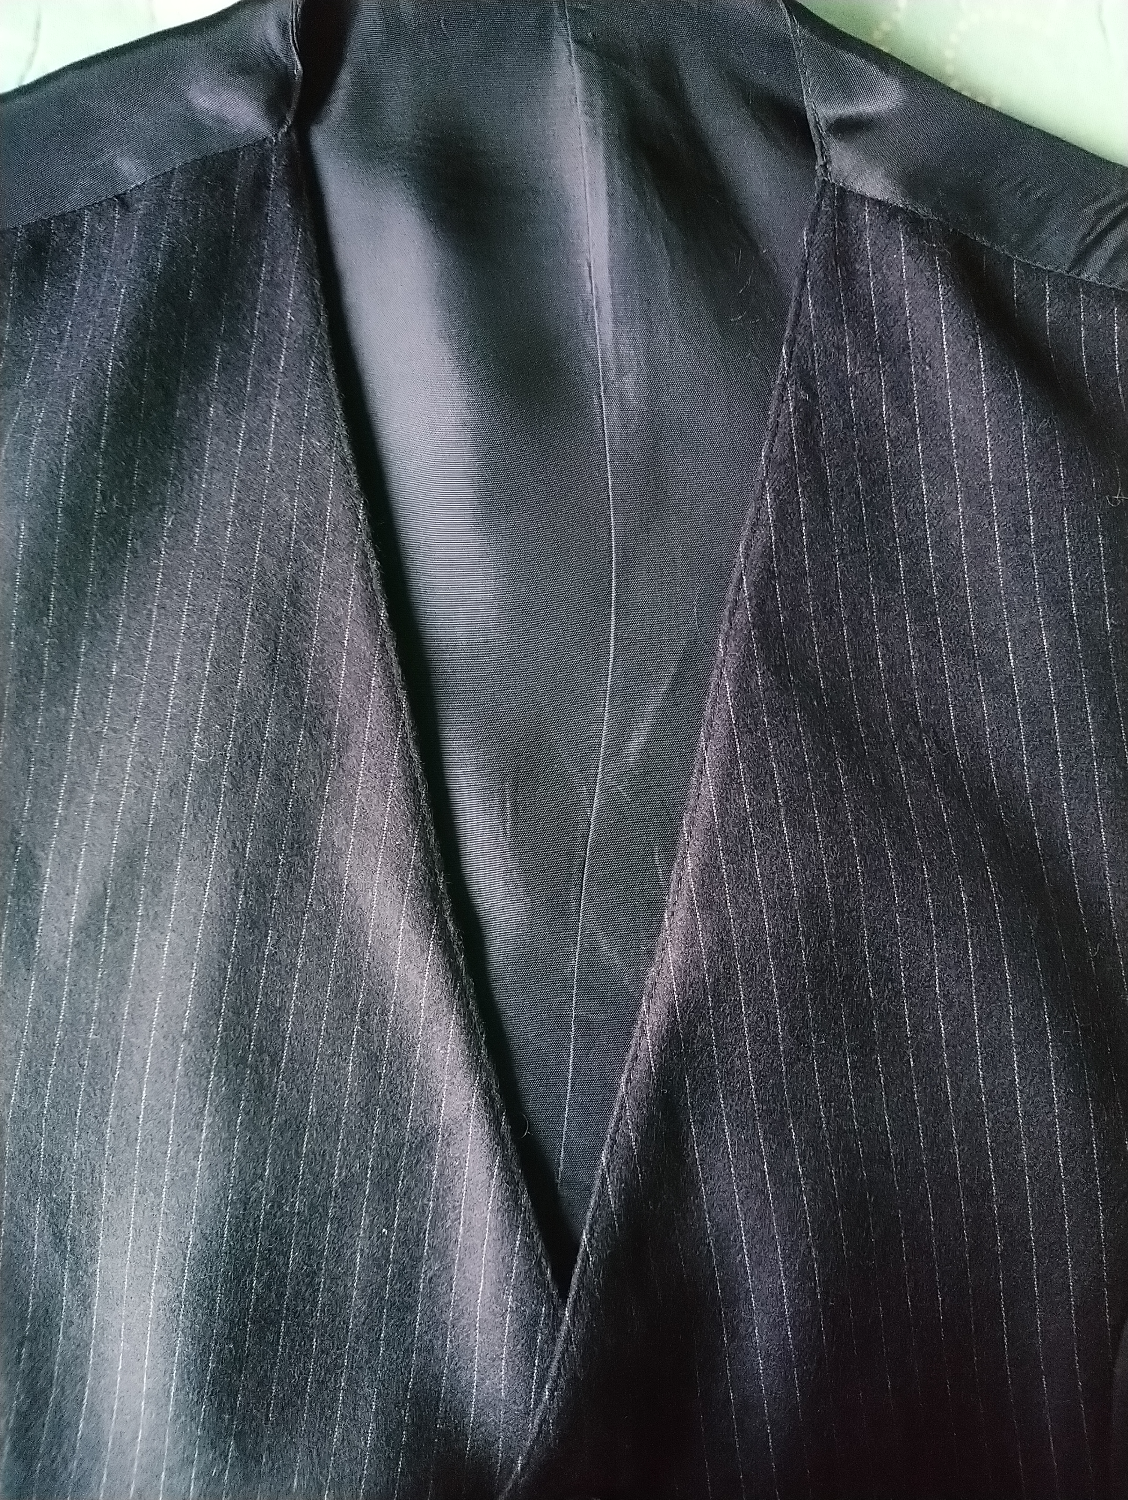 Wool waistcoat. Dark blue striped. Size L. # 212